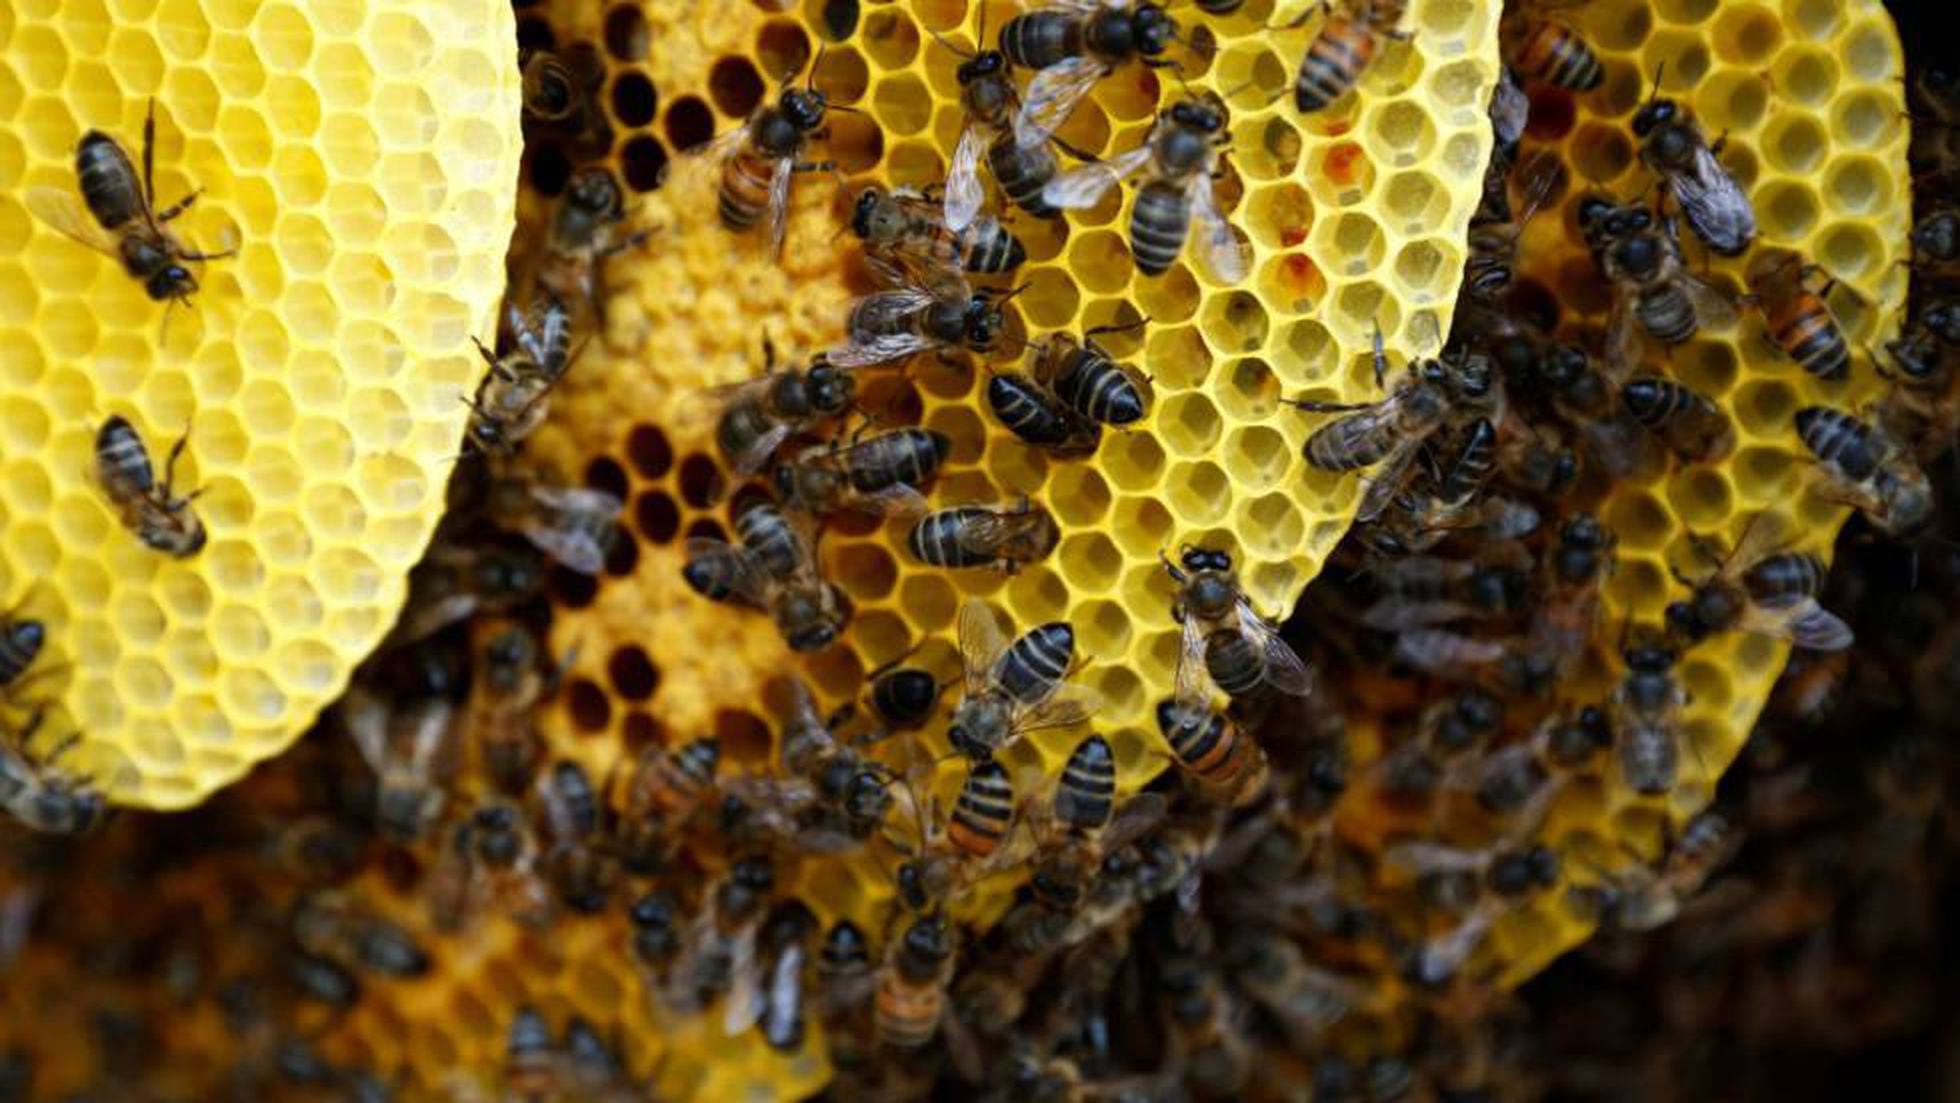 Colmenas de abejas en Colombia crecen, pero el peligro se mantiene